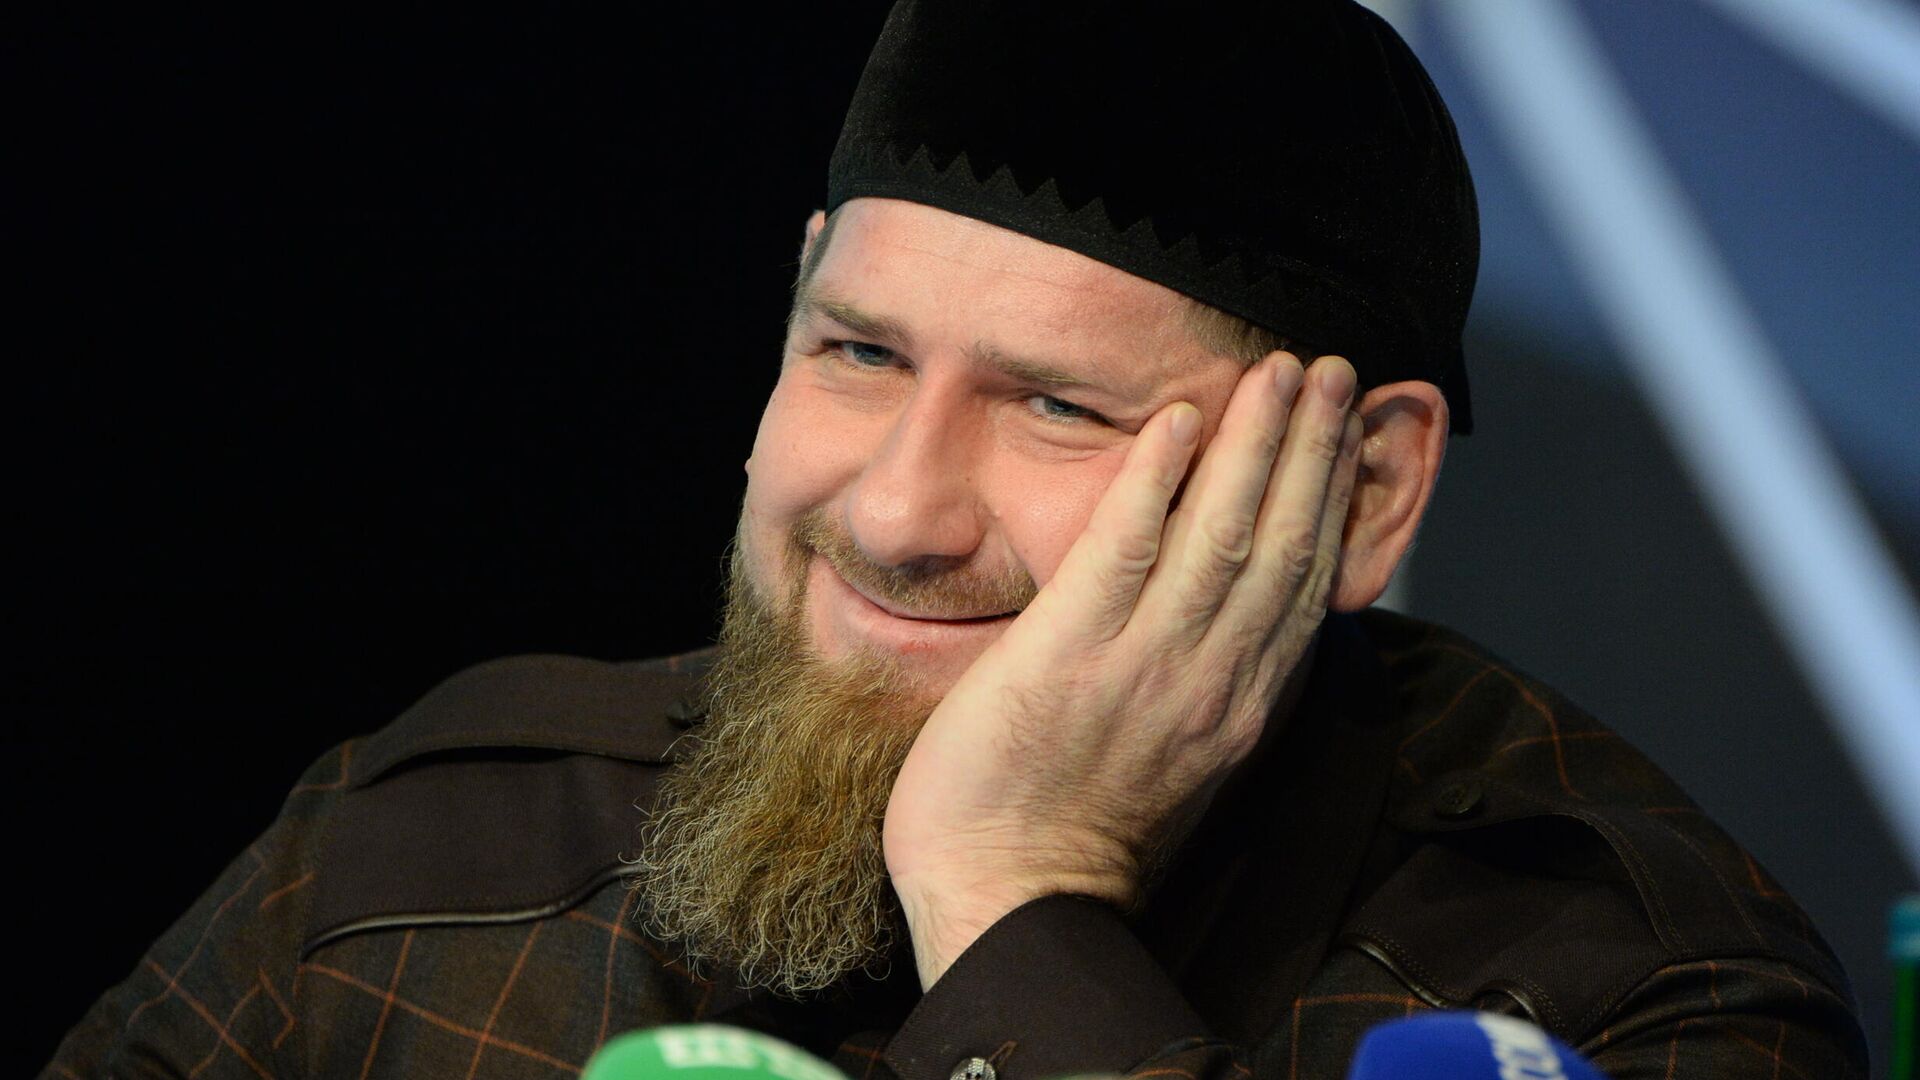 Кадыров предложил всем желающим странам ввести против него самые жесткие санкции